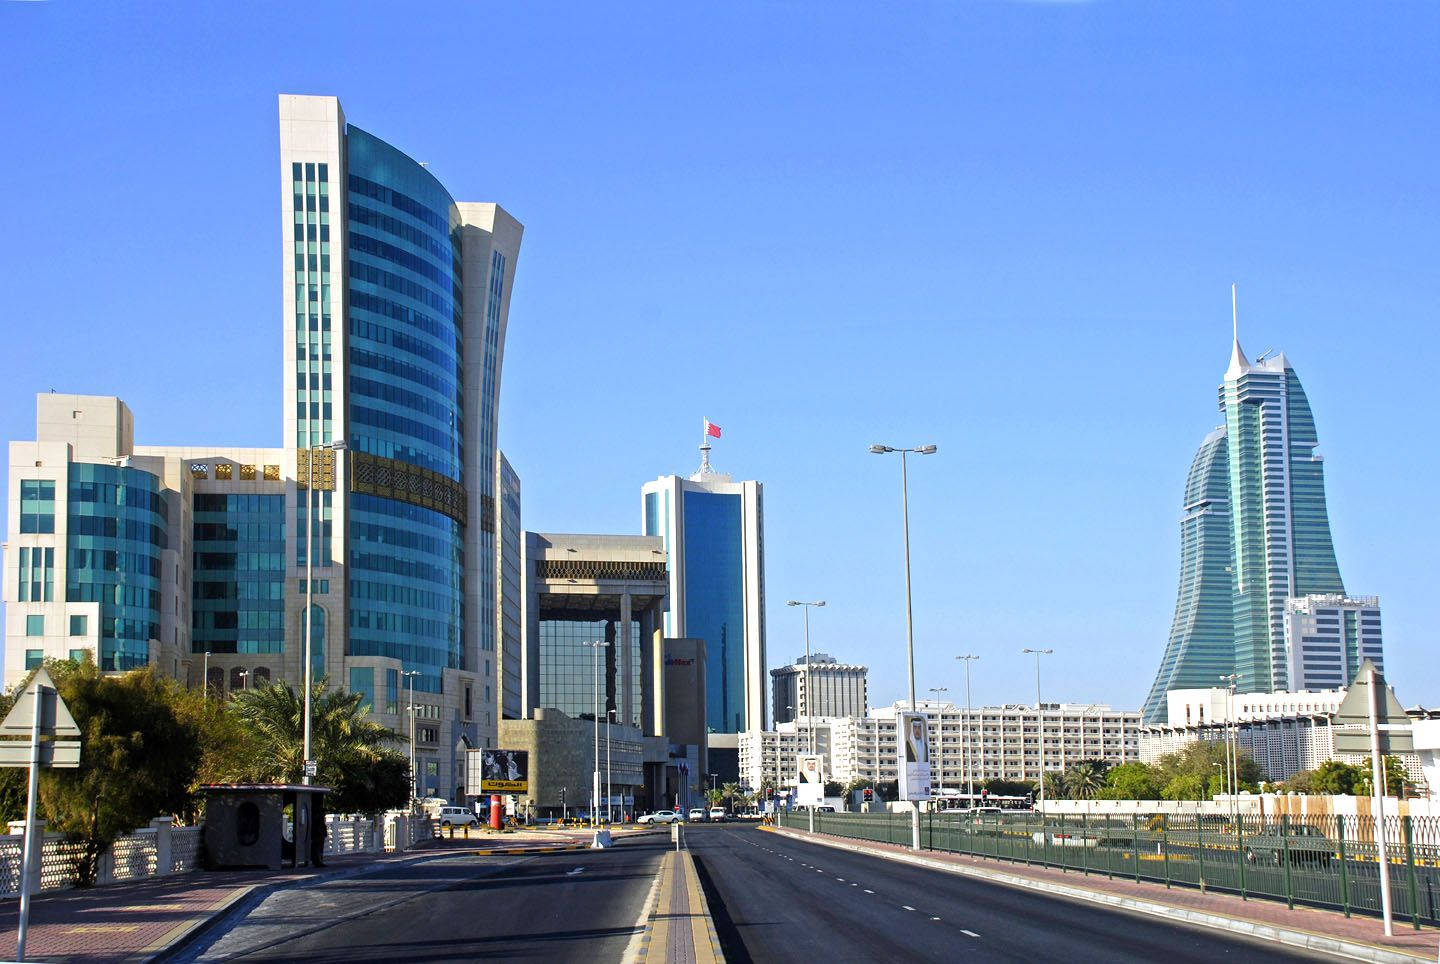 Bahraincentrums Byggnader Wallpaper